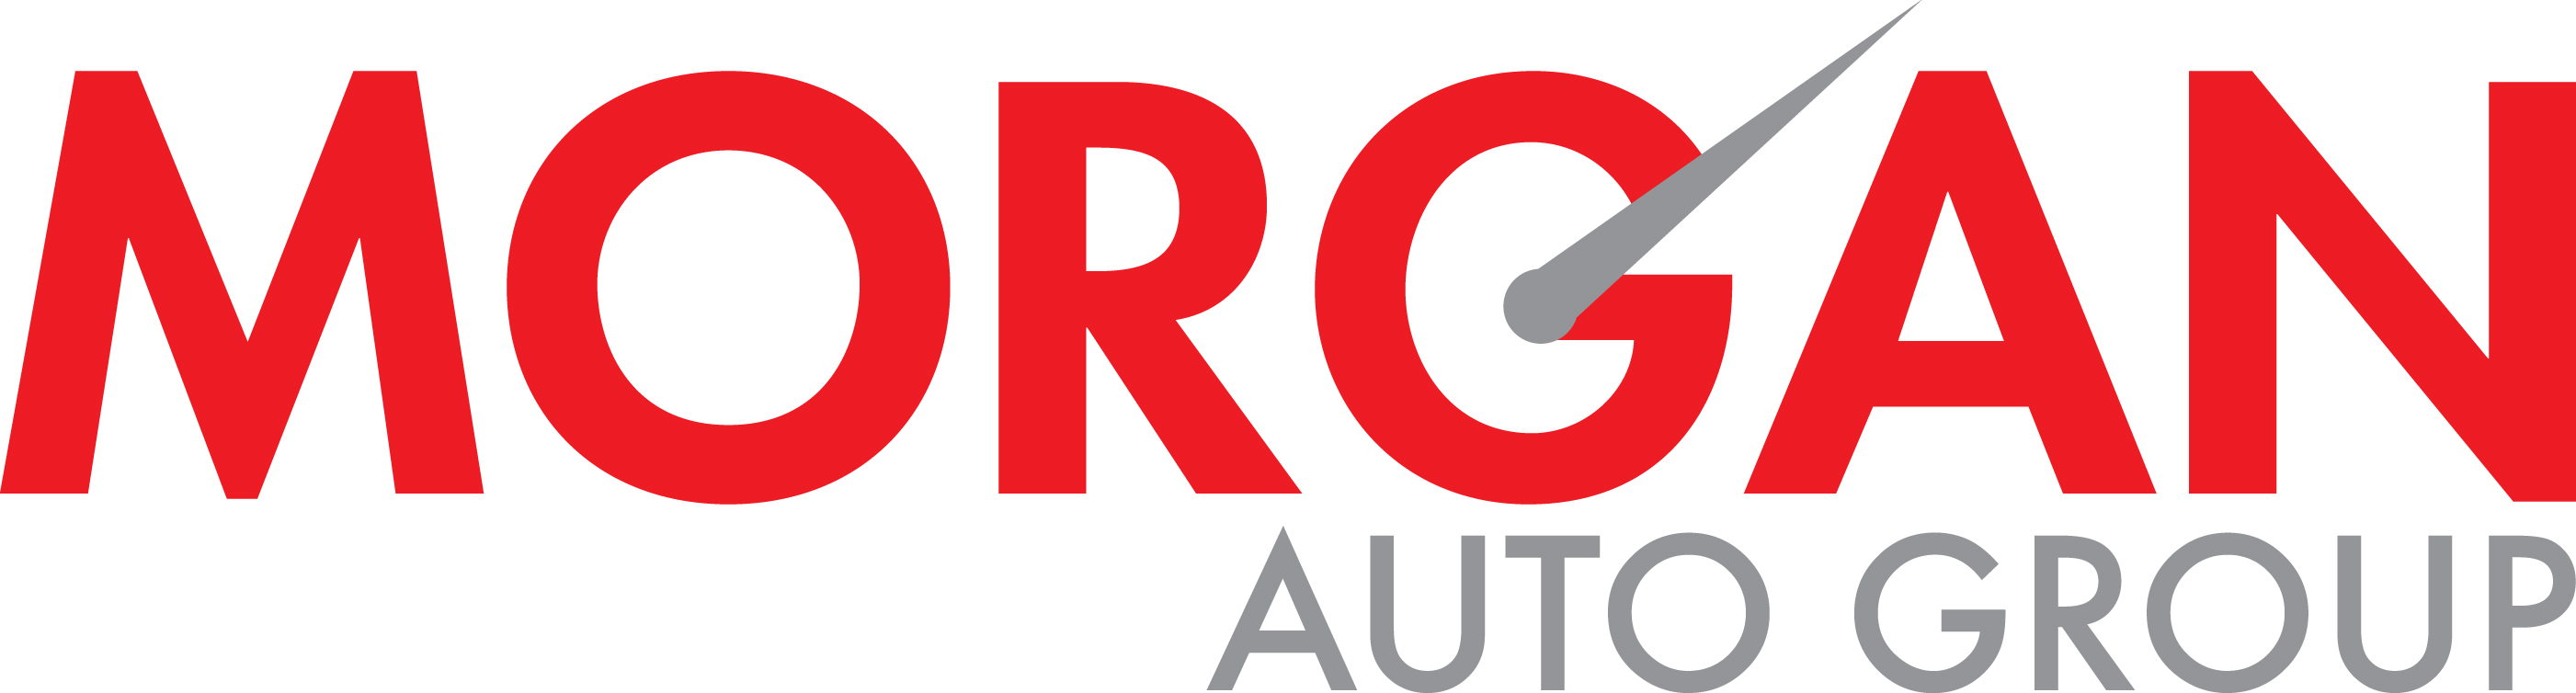 Morgan Auto Group Announces